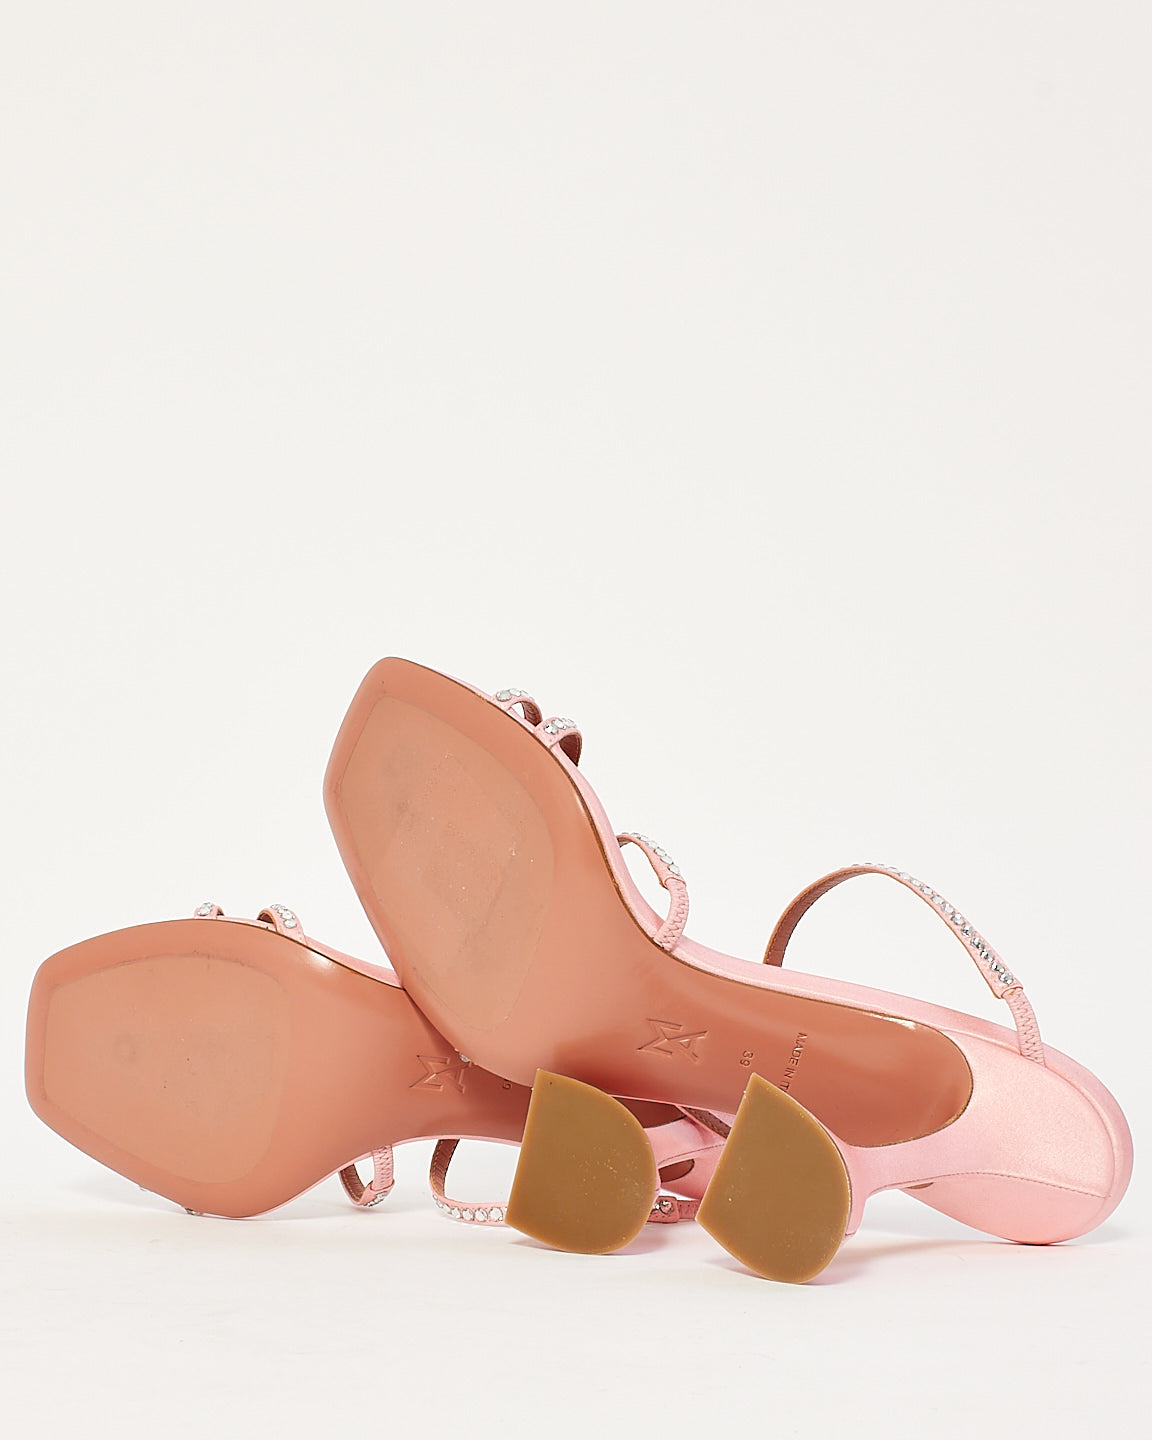 Amina Muaddi Pink Naima Embellished Satin Sandals - 39